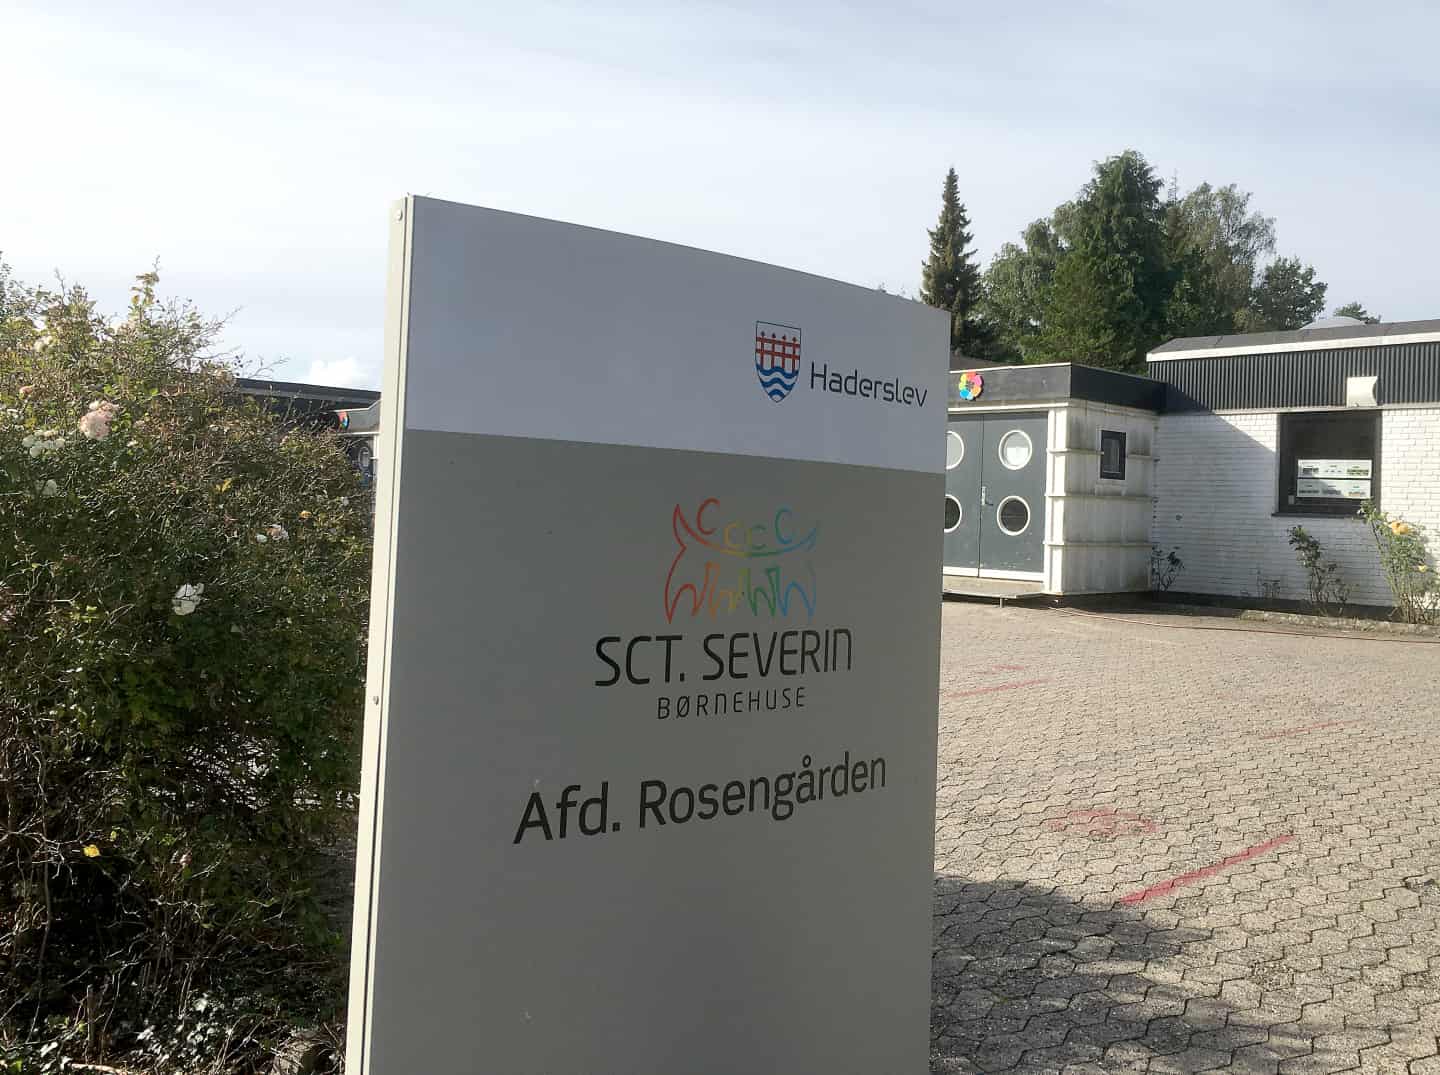 første gang i mange år: Haderslev by får en ny børnehave | jv.dk